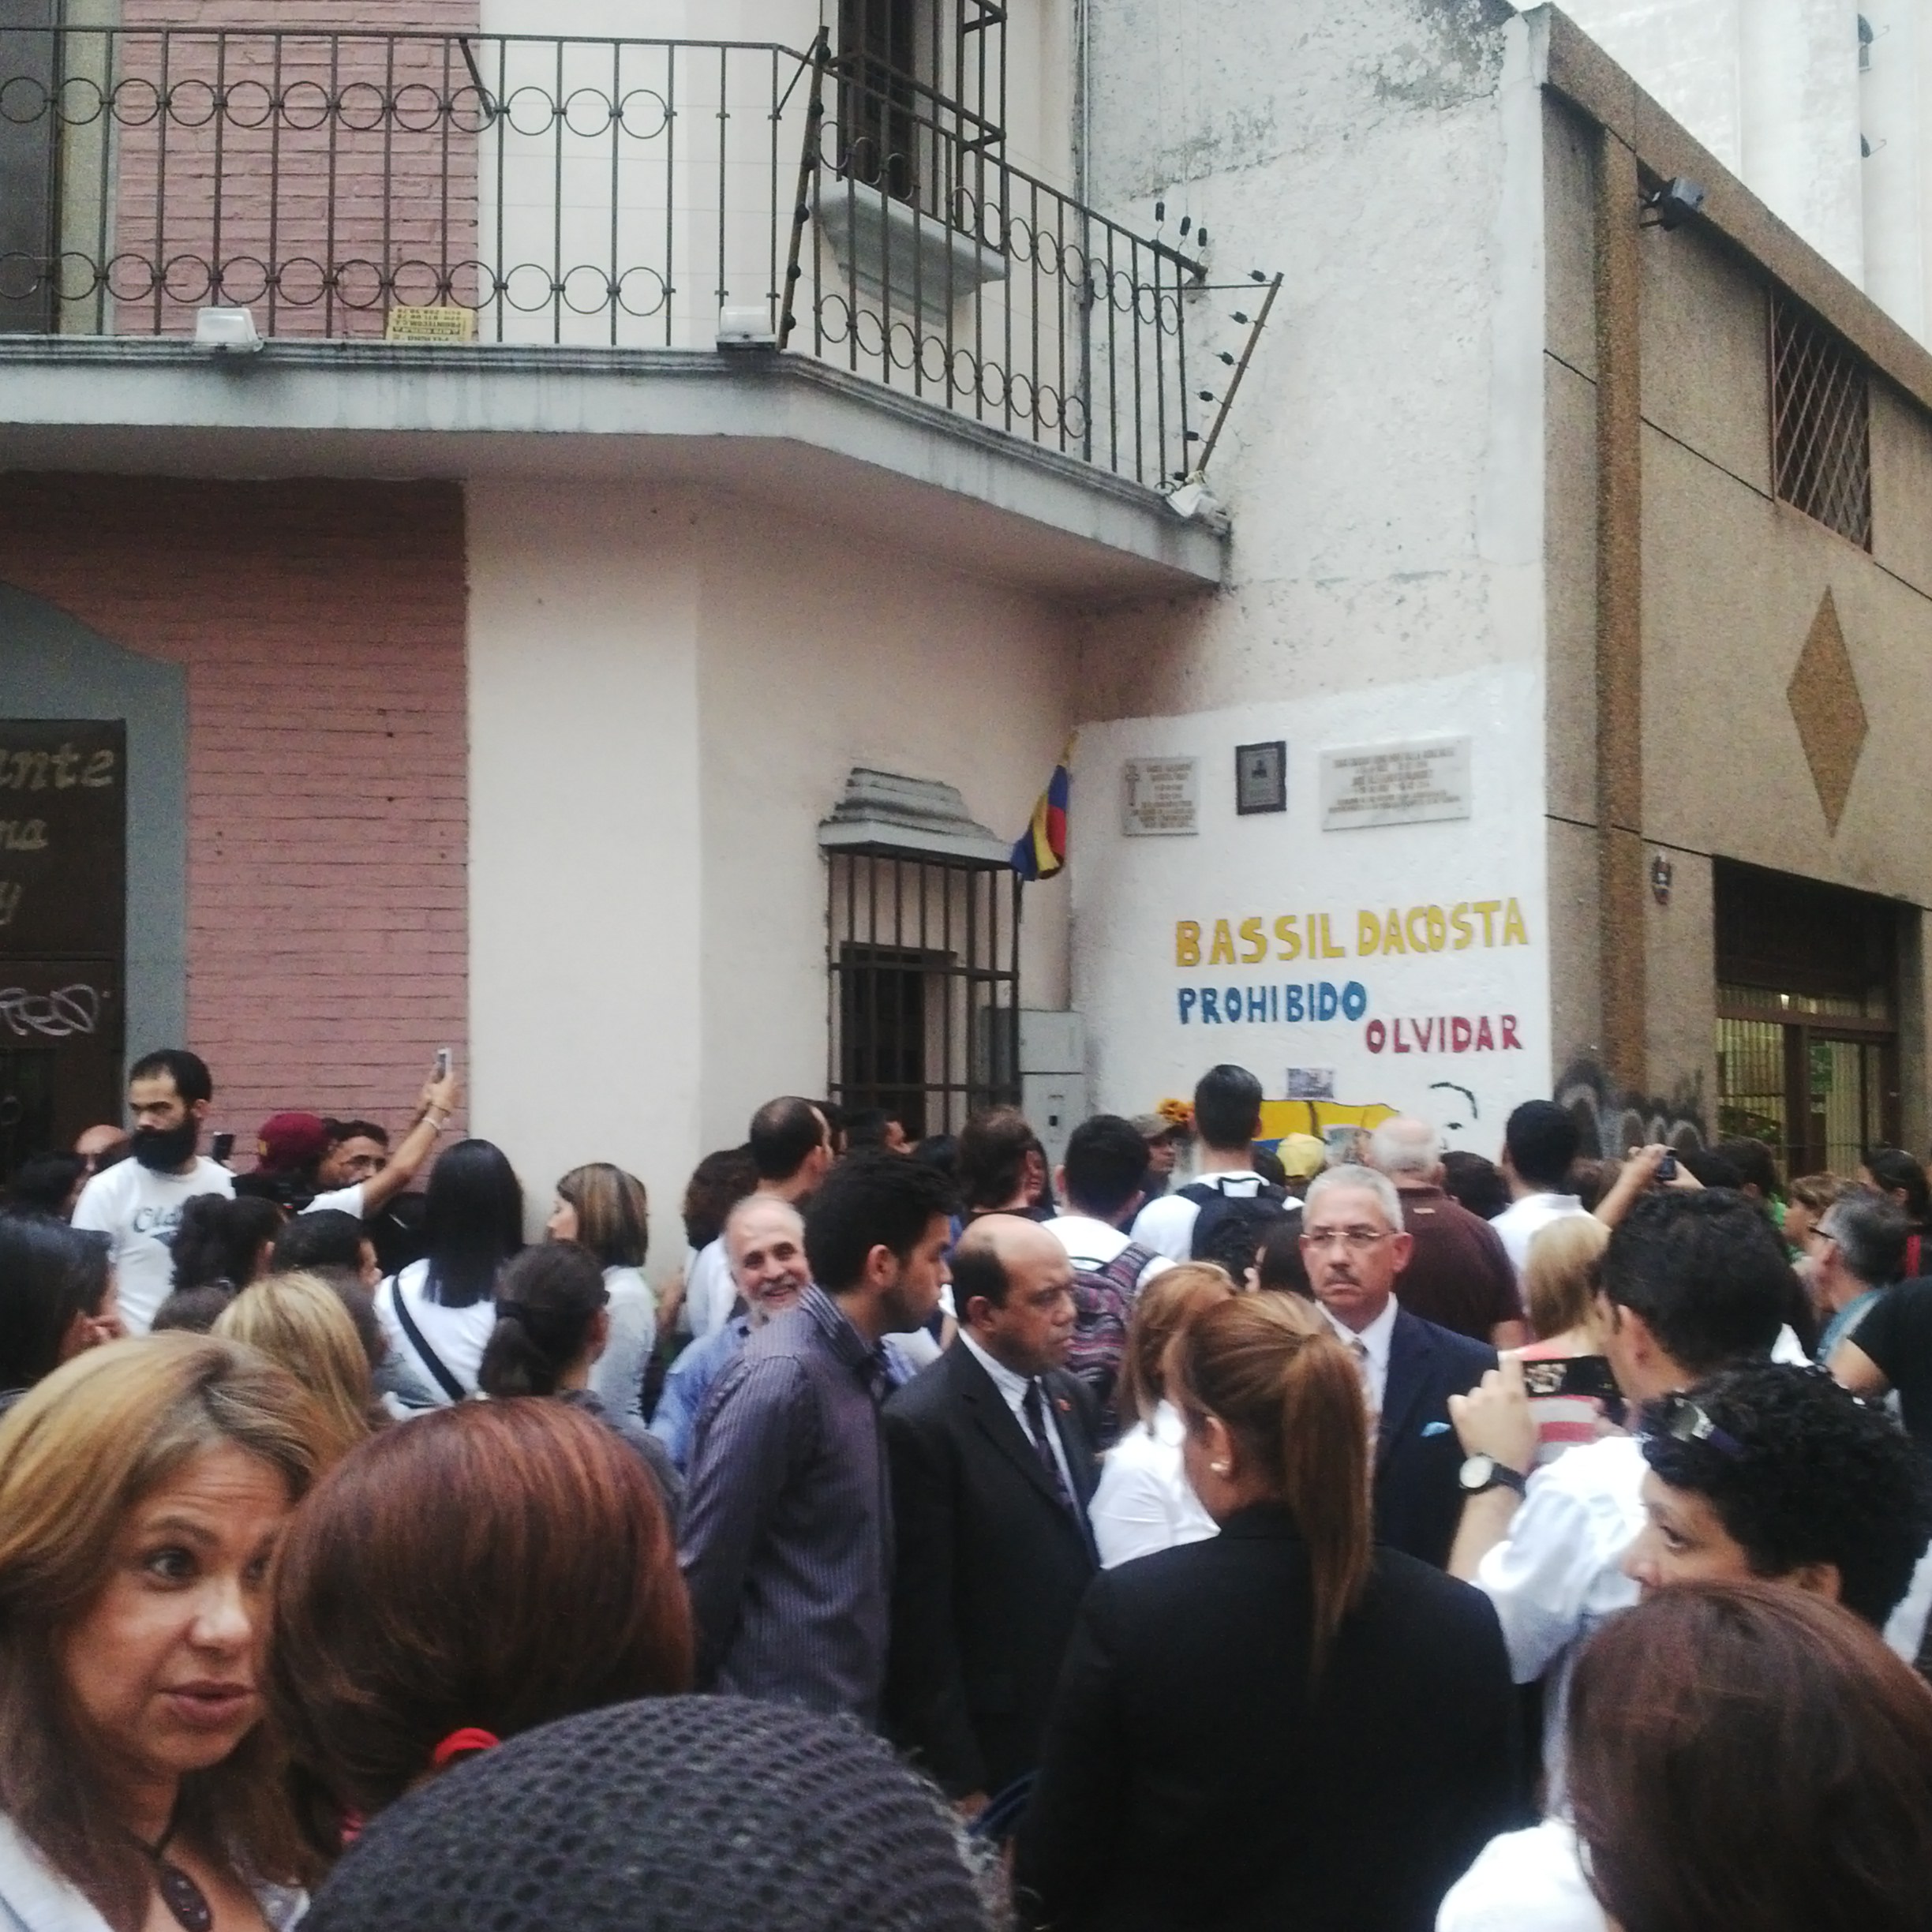 Vecinos de La Candelaria claman justicia para Bassil Da Costa y demás caídos el 12F (Fotos)